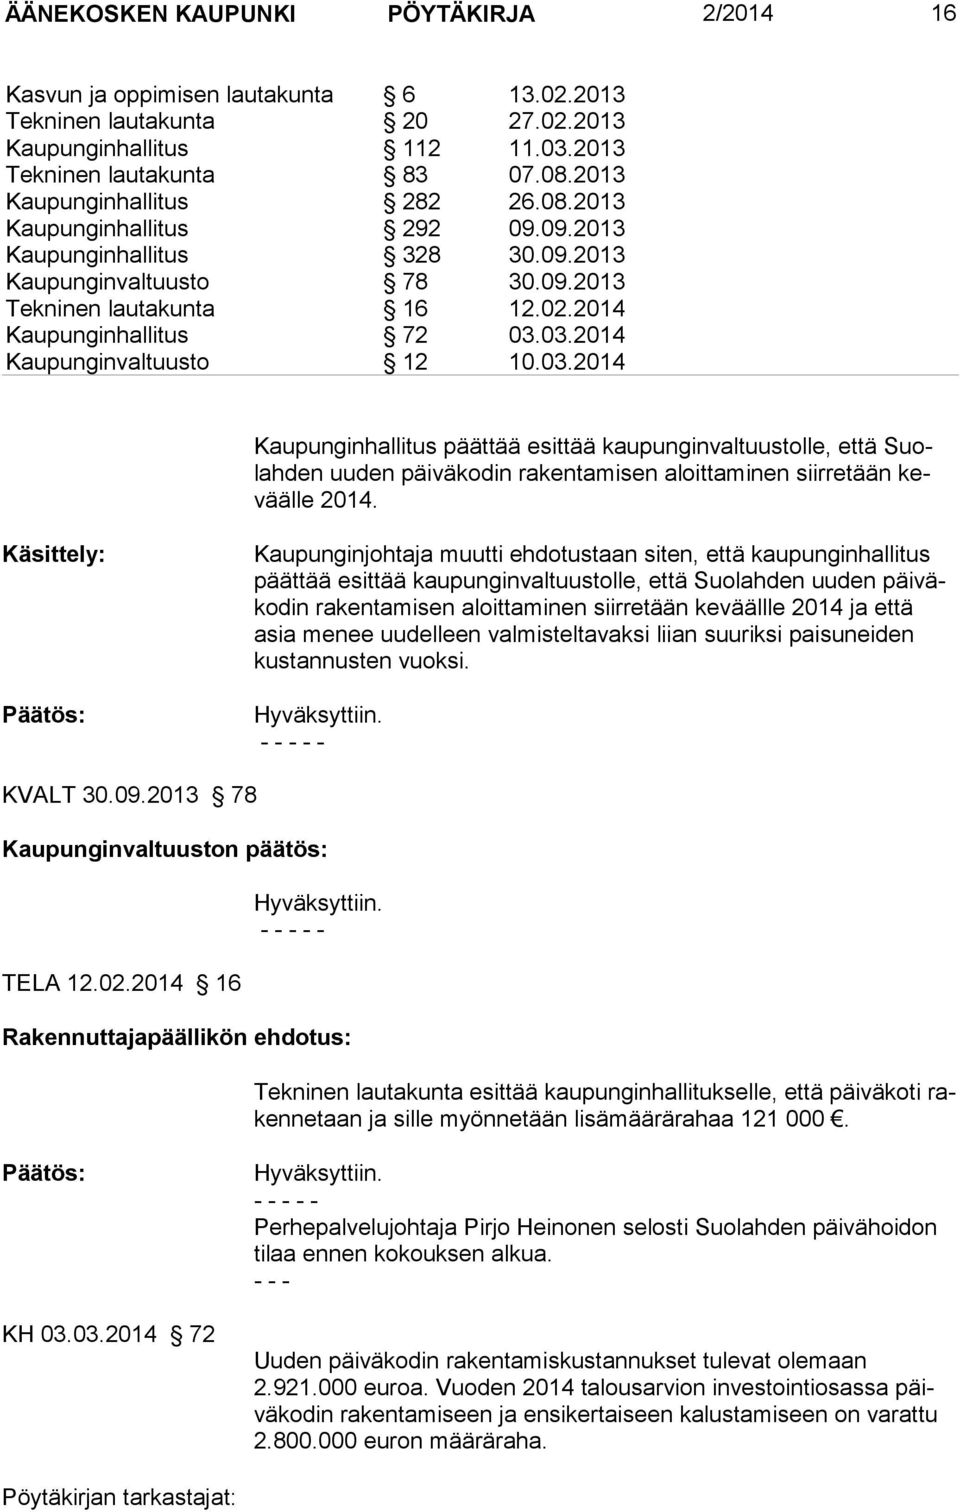 03.2014 Kaupunginvaltuusto 12 10.03.2014 Kaupunginhallitus päättää esittää kaupunginvaltuustolle, että Suolahden uuden päiväkodin rakentamisen aloittaminen siirretään keväälle 2014.